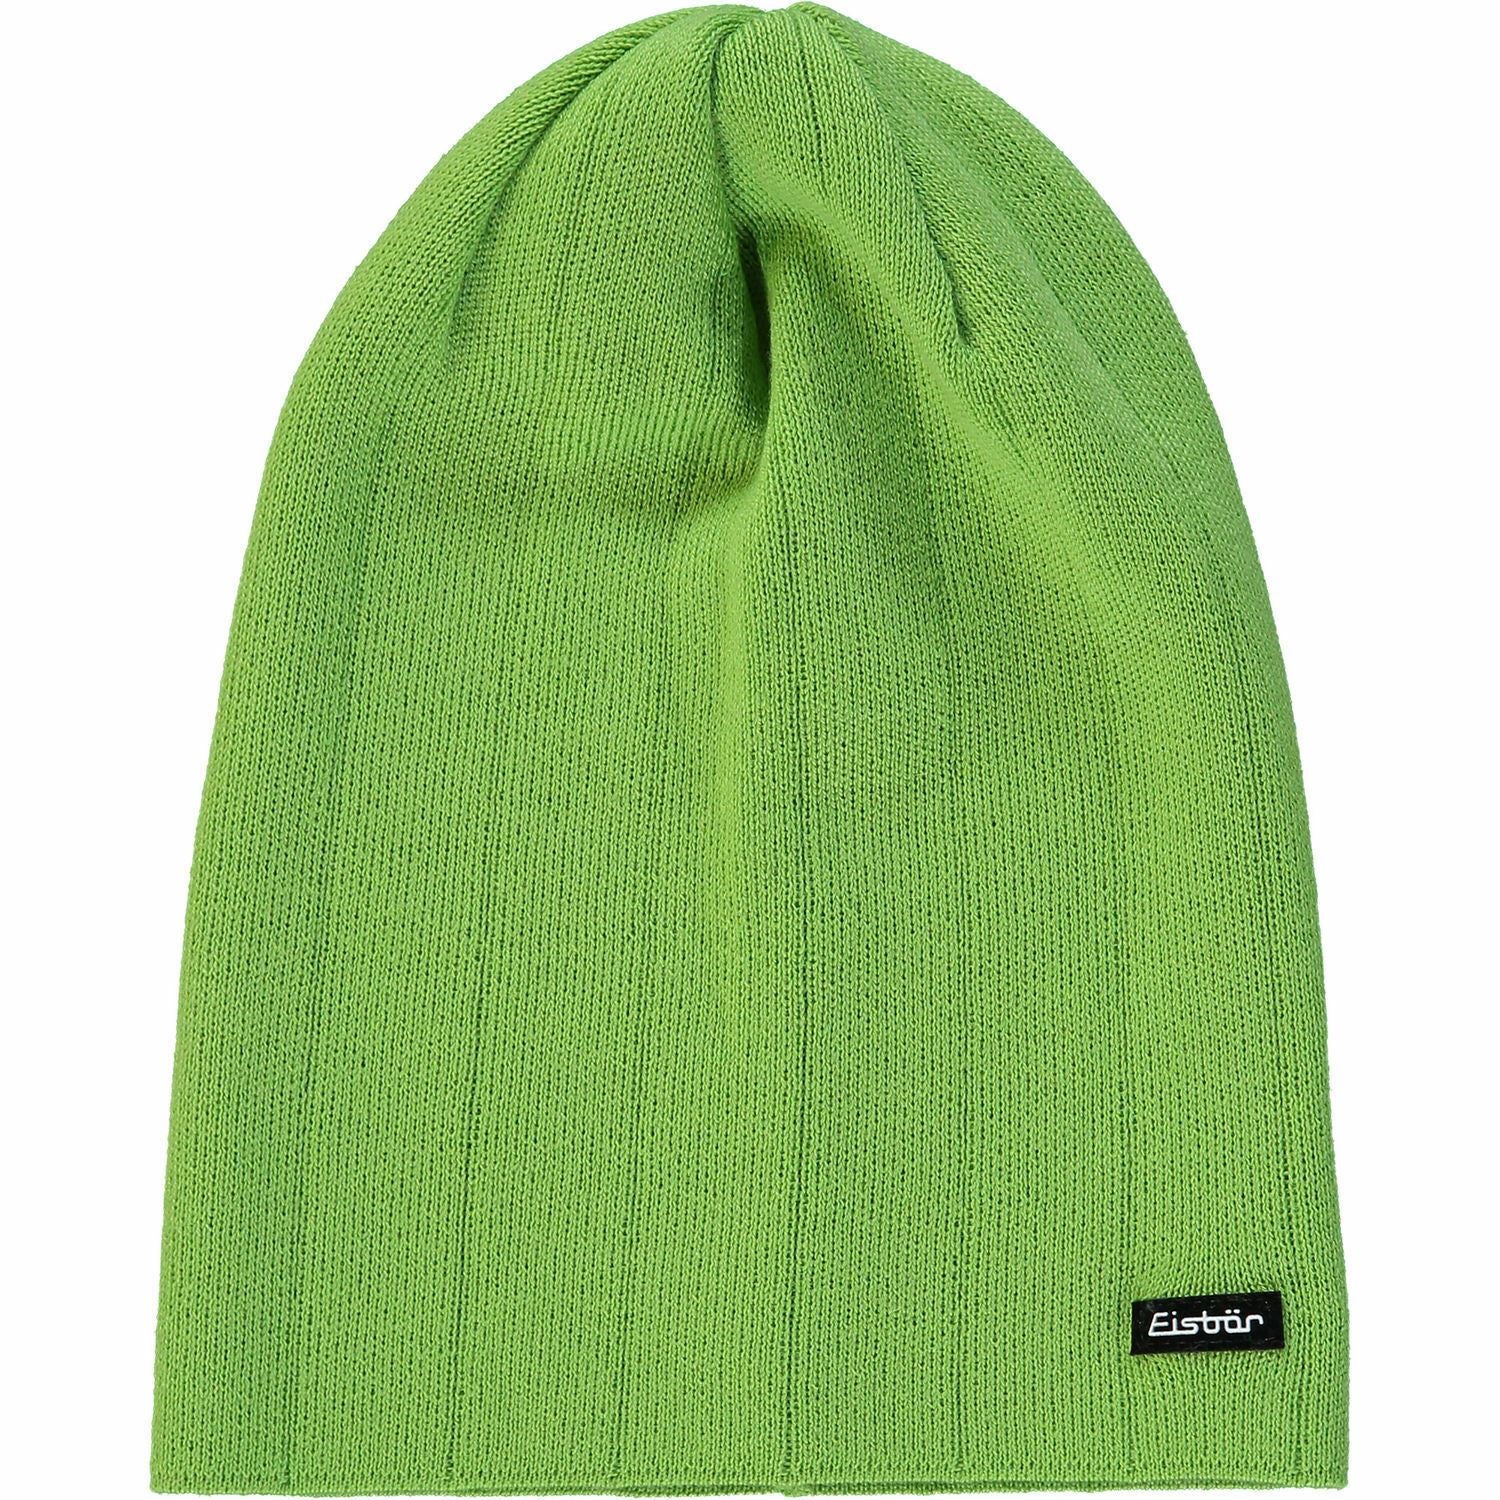 JOB LOT 28 x Womens EISBAR Craggy OS MU Green Wool Blend Beanie Hat One Size